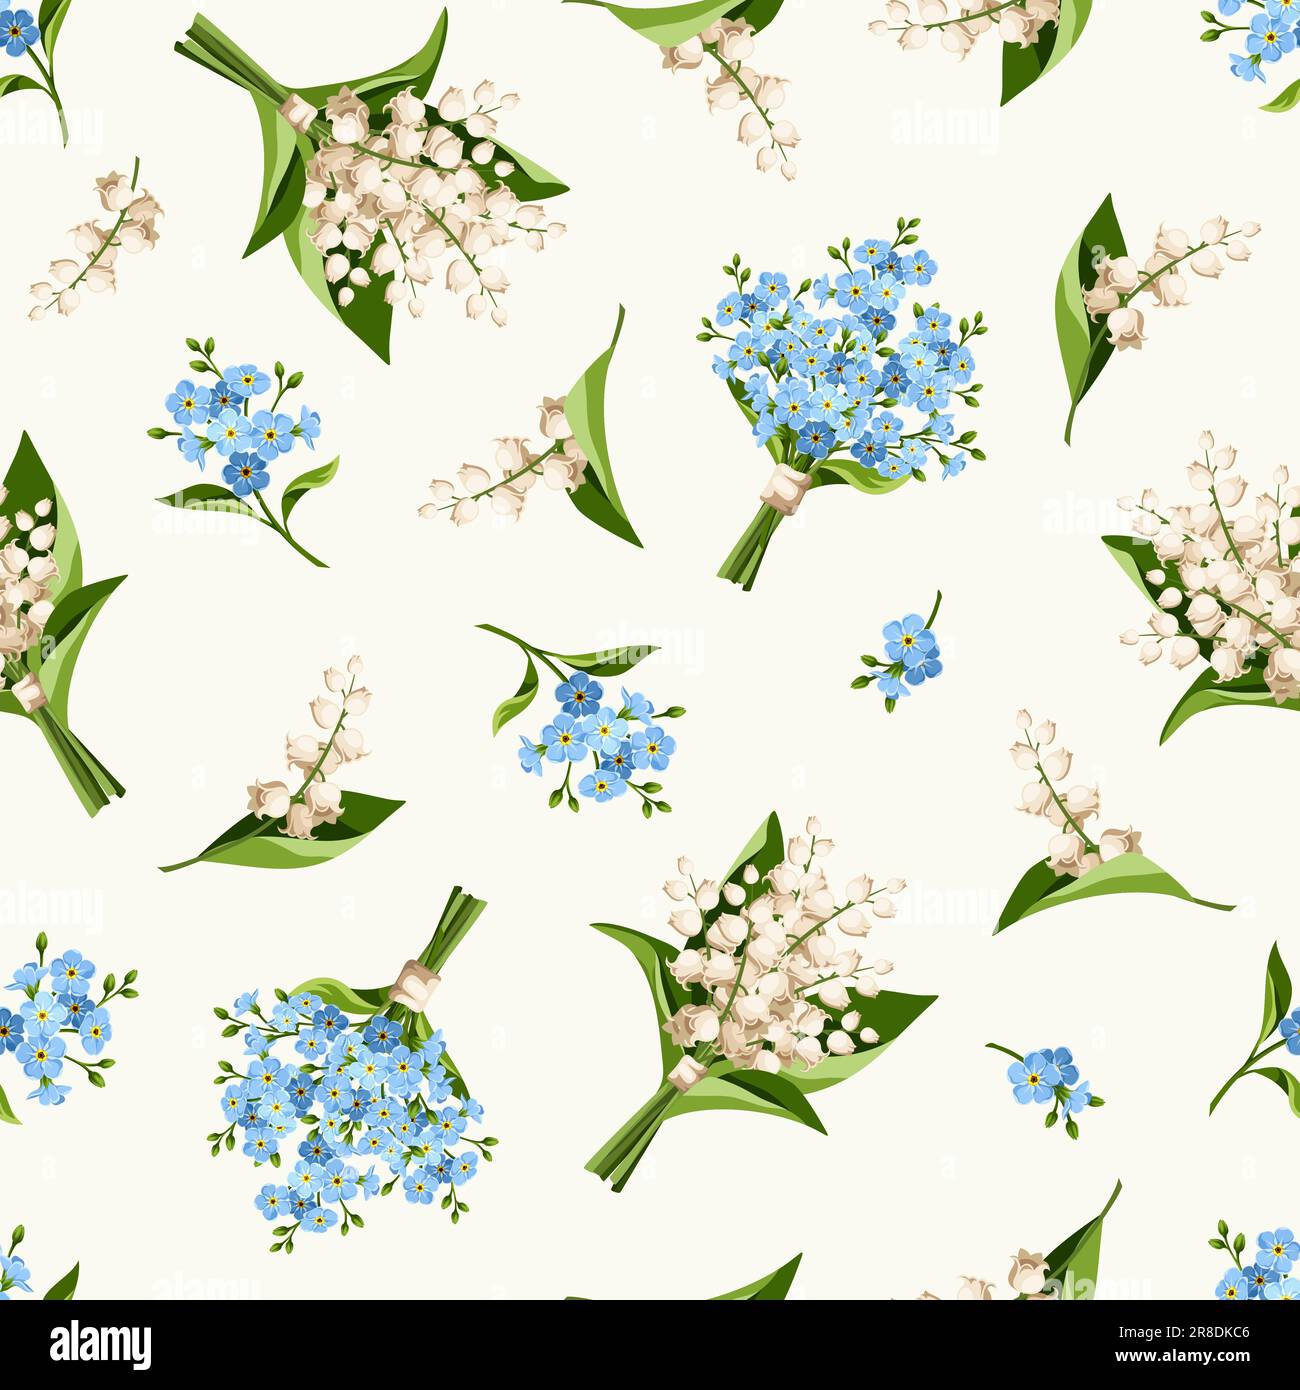 Motivo floreale senza cuciture con giglio blu e bianco della valle e fiori scordanti su sfondo avorio. Illustrazione vettoriale Illustrazione Vettoriale